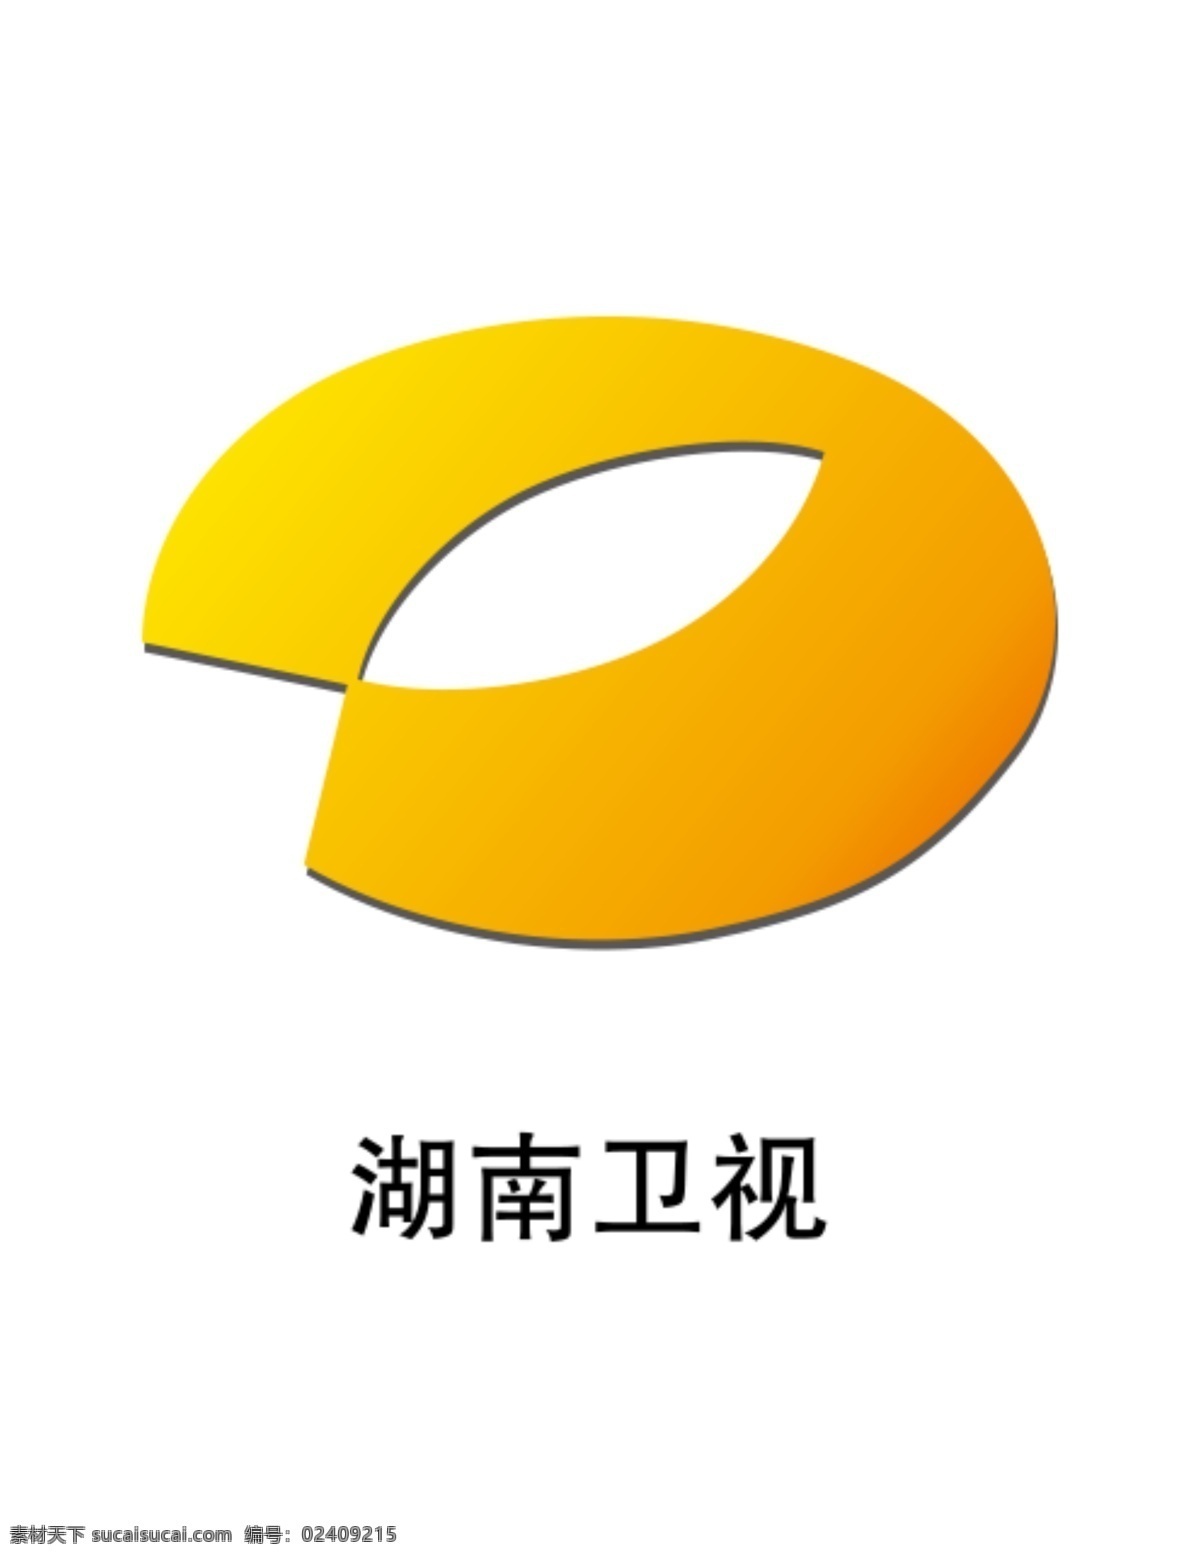 湖南卫视标志 湖南卫视 logo 湖南卫视台标 湖南电视台